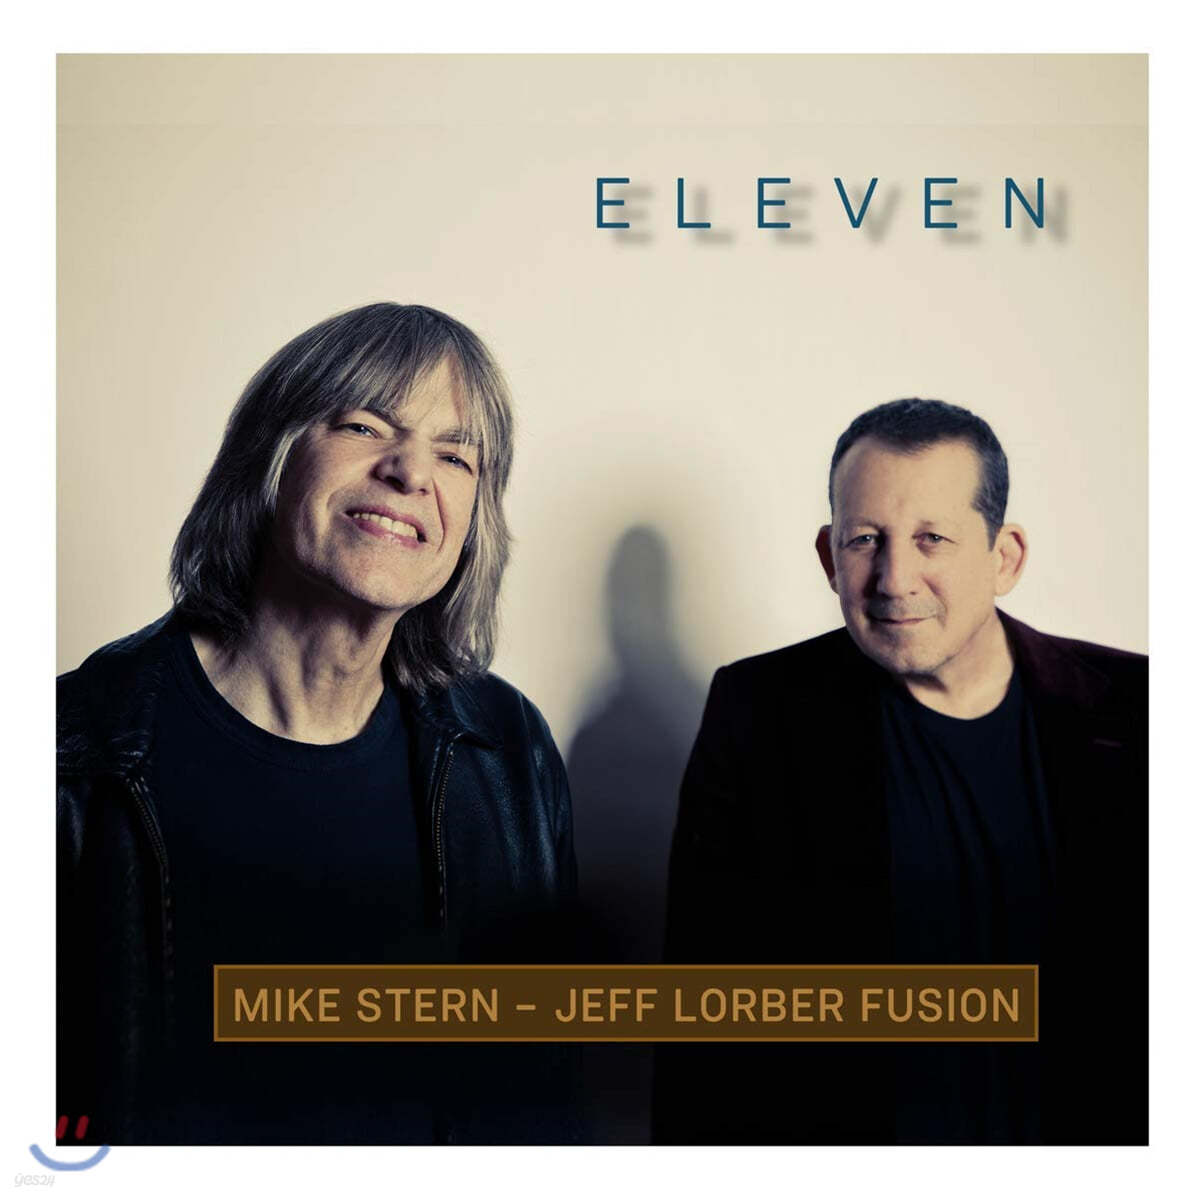 Mike Stern / Jeff Lorber Fusion (마이크 스턴, 제프 로버 퓨젼) - Eleven